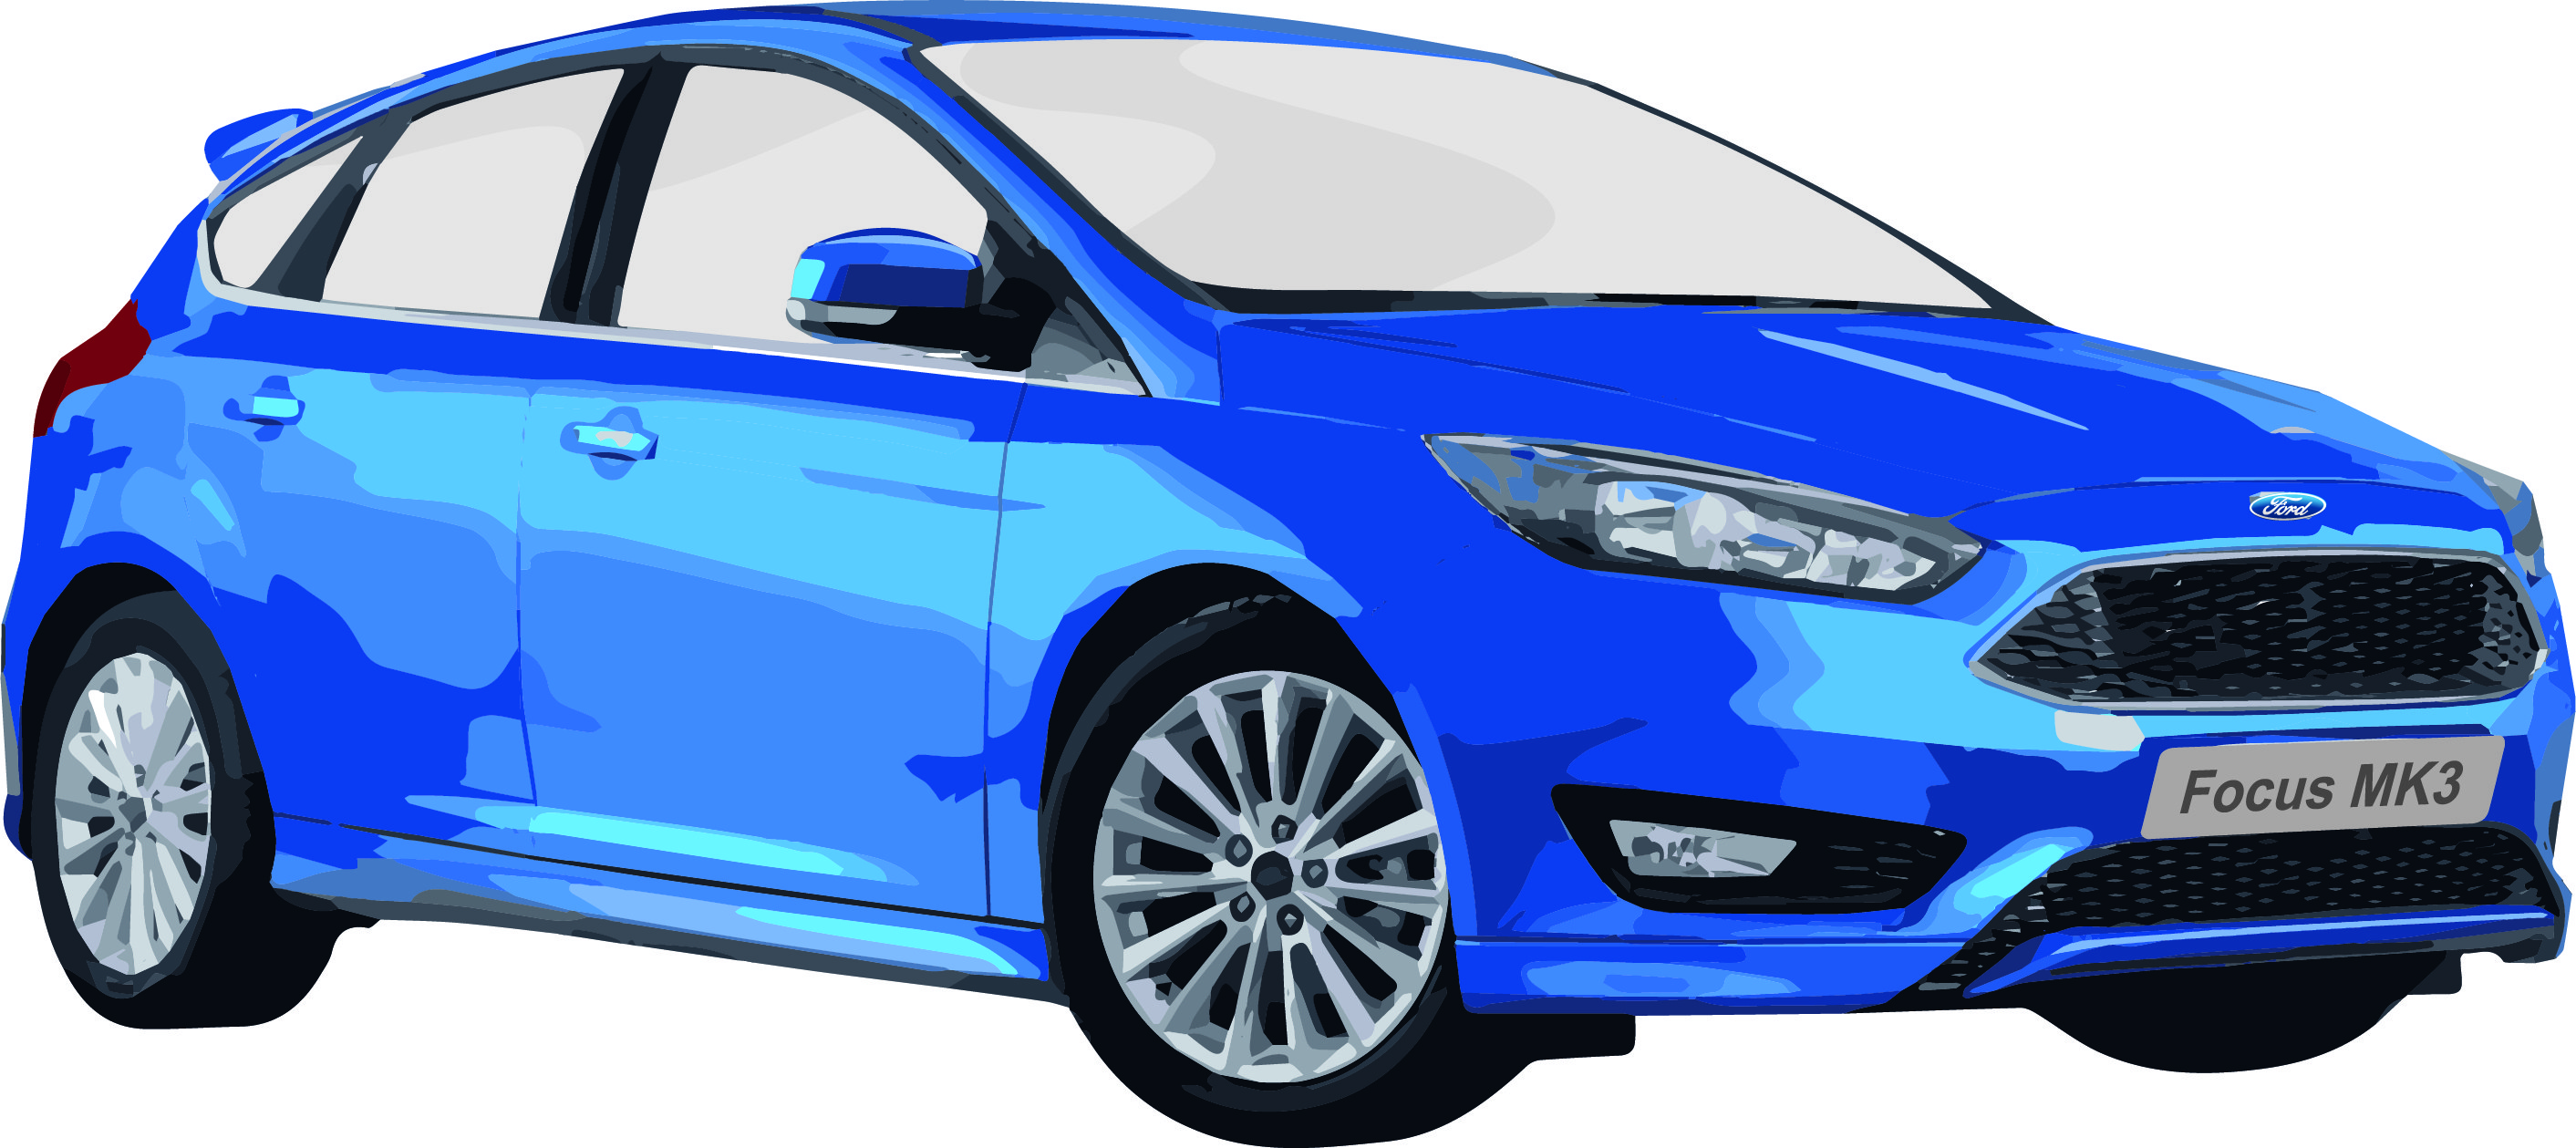 Ford Focus MK3 Ersatzteile und Produktdaten von Motomobil